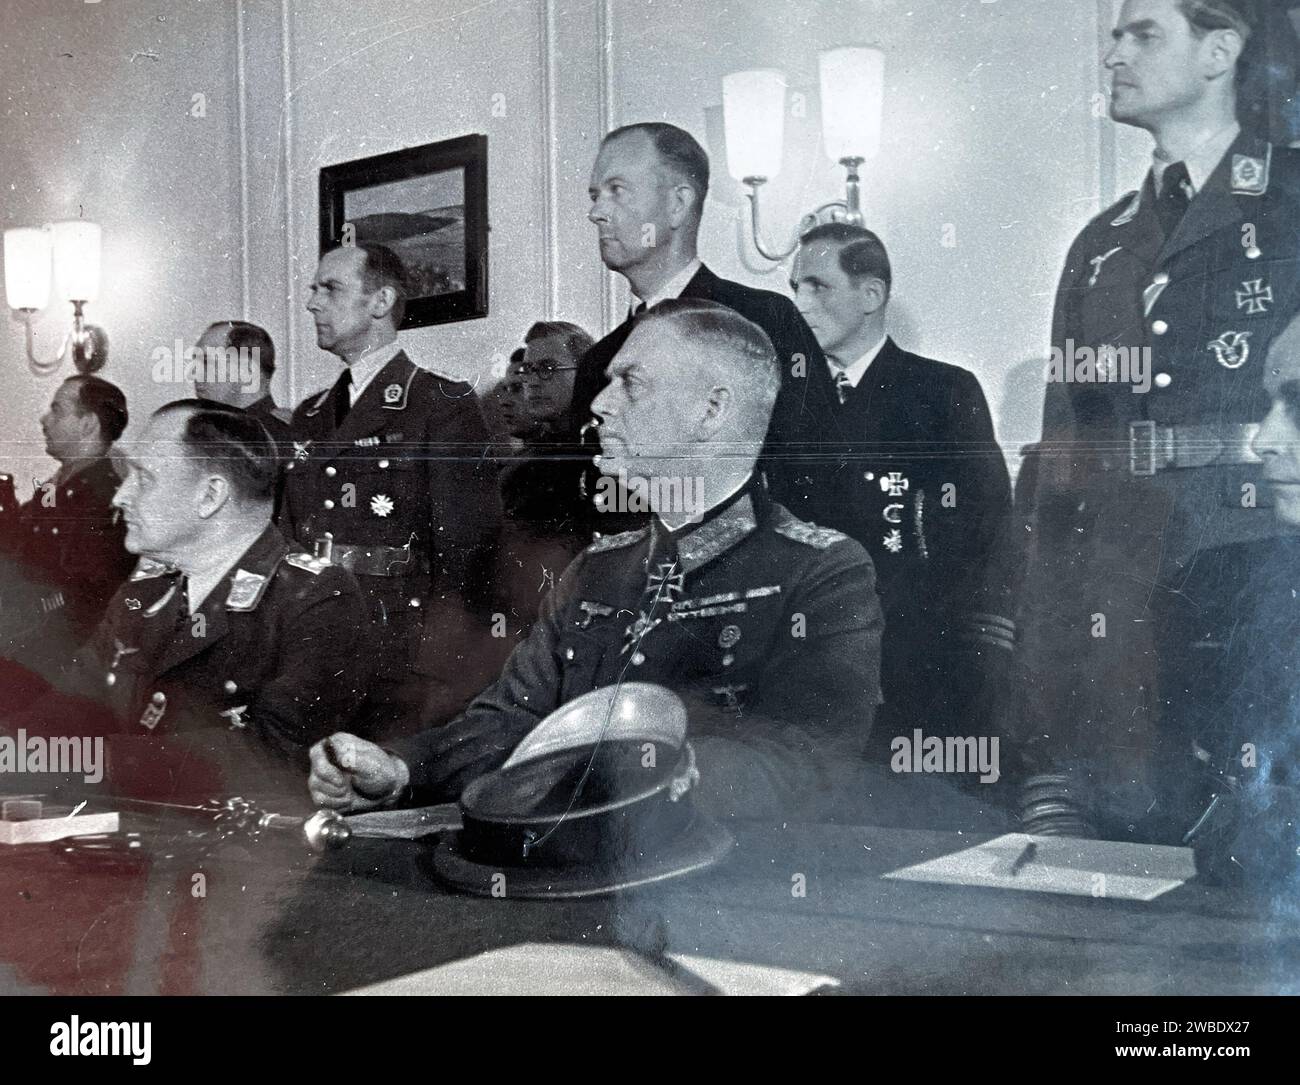 WILHELM KEITEL (1882-1946) al centro ascoltando i termini della resa a Berlino, l'8 maggio 1945, prima di firmare per conto dell'esercito tedesco. Foto: SIB Foto Stock